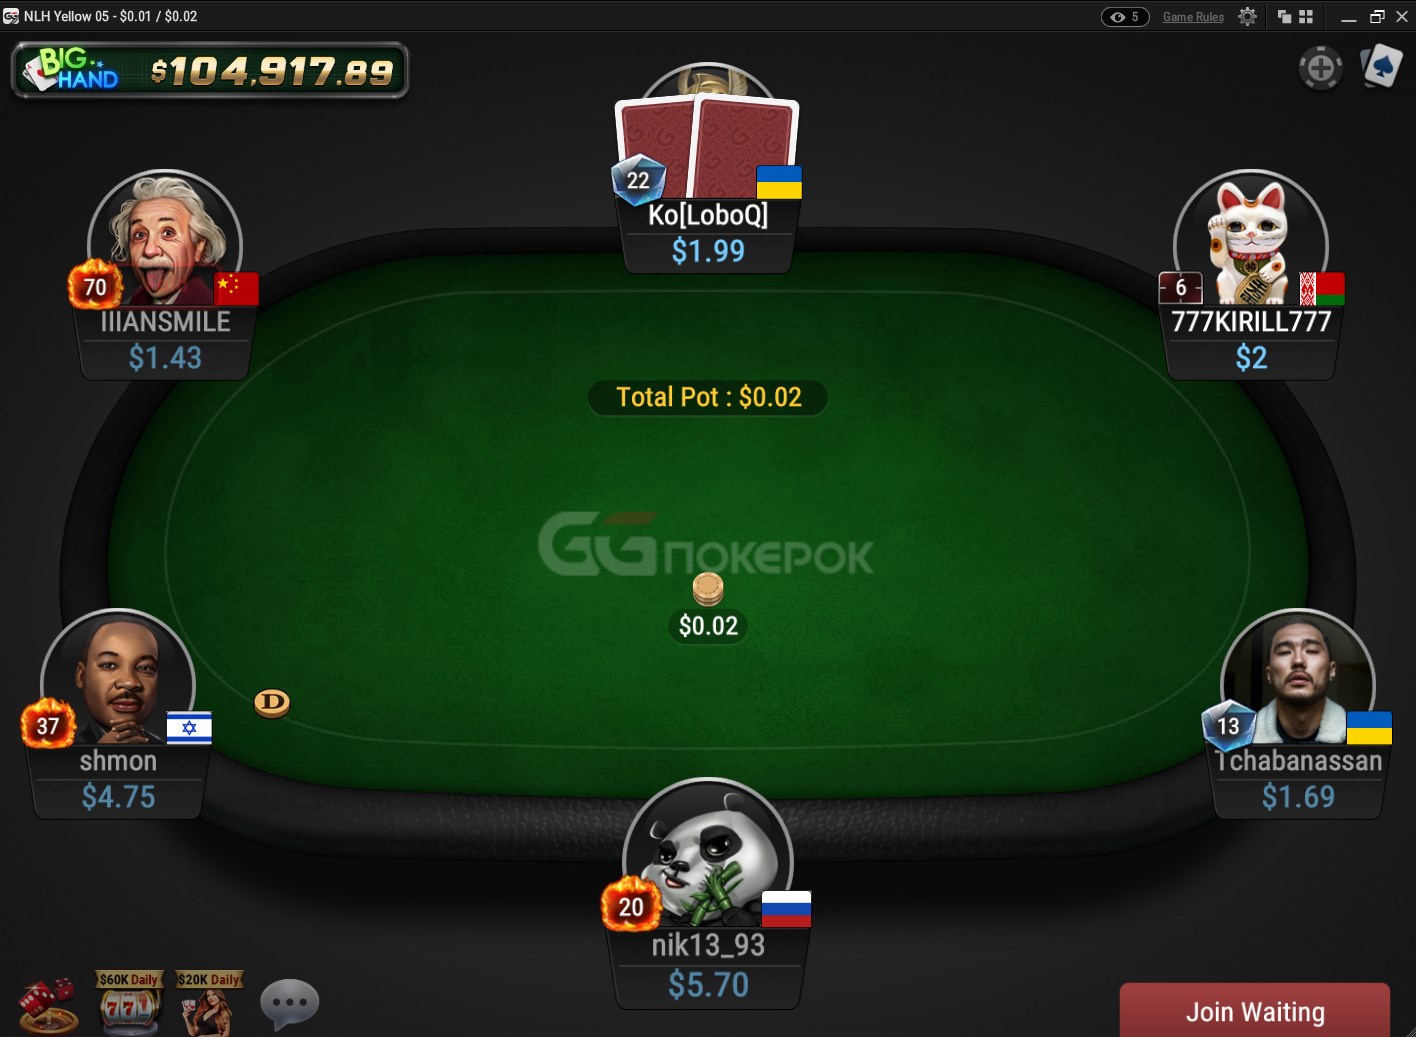 Скорость игры в Rush and Cash на покерок не уступает PokerStars.